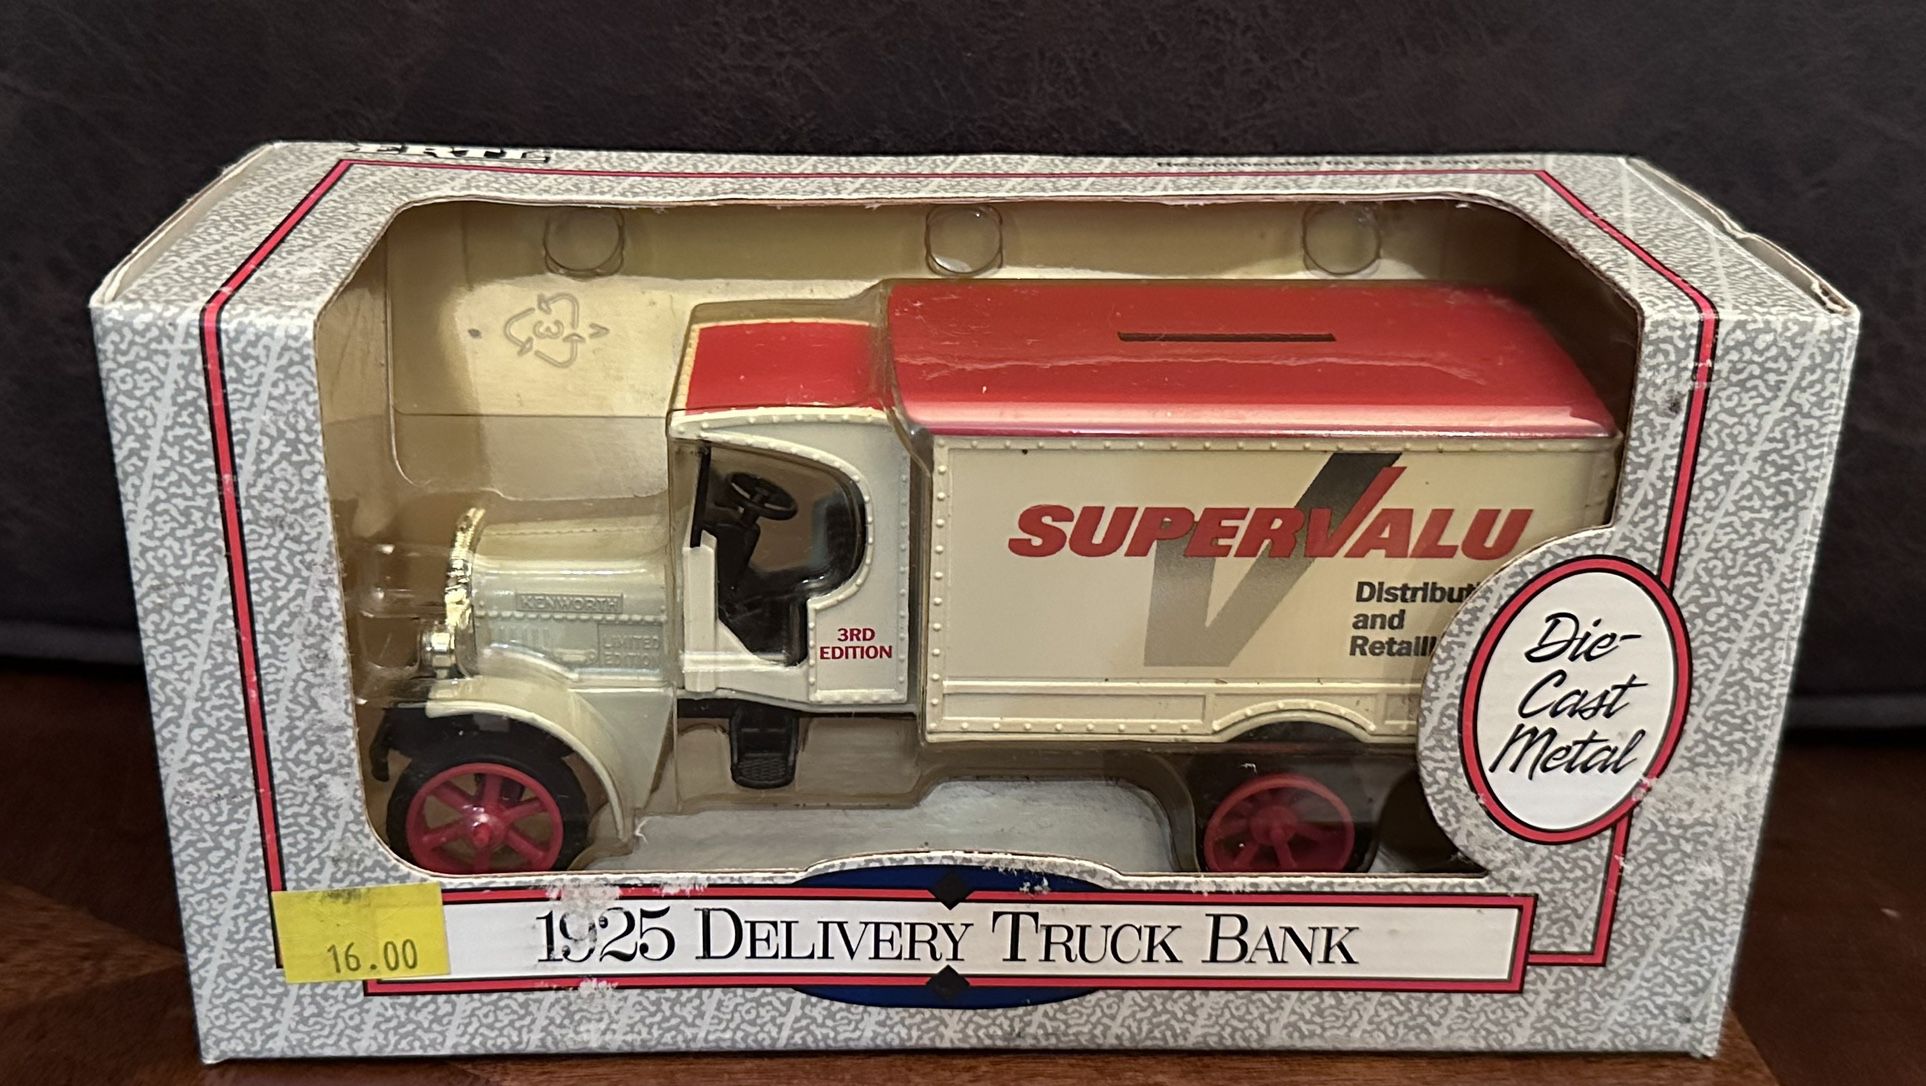 Ertl 1925 Delivery Truck Bank SuperValu 3rd Edition Die Cast Metal